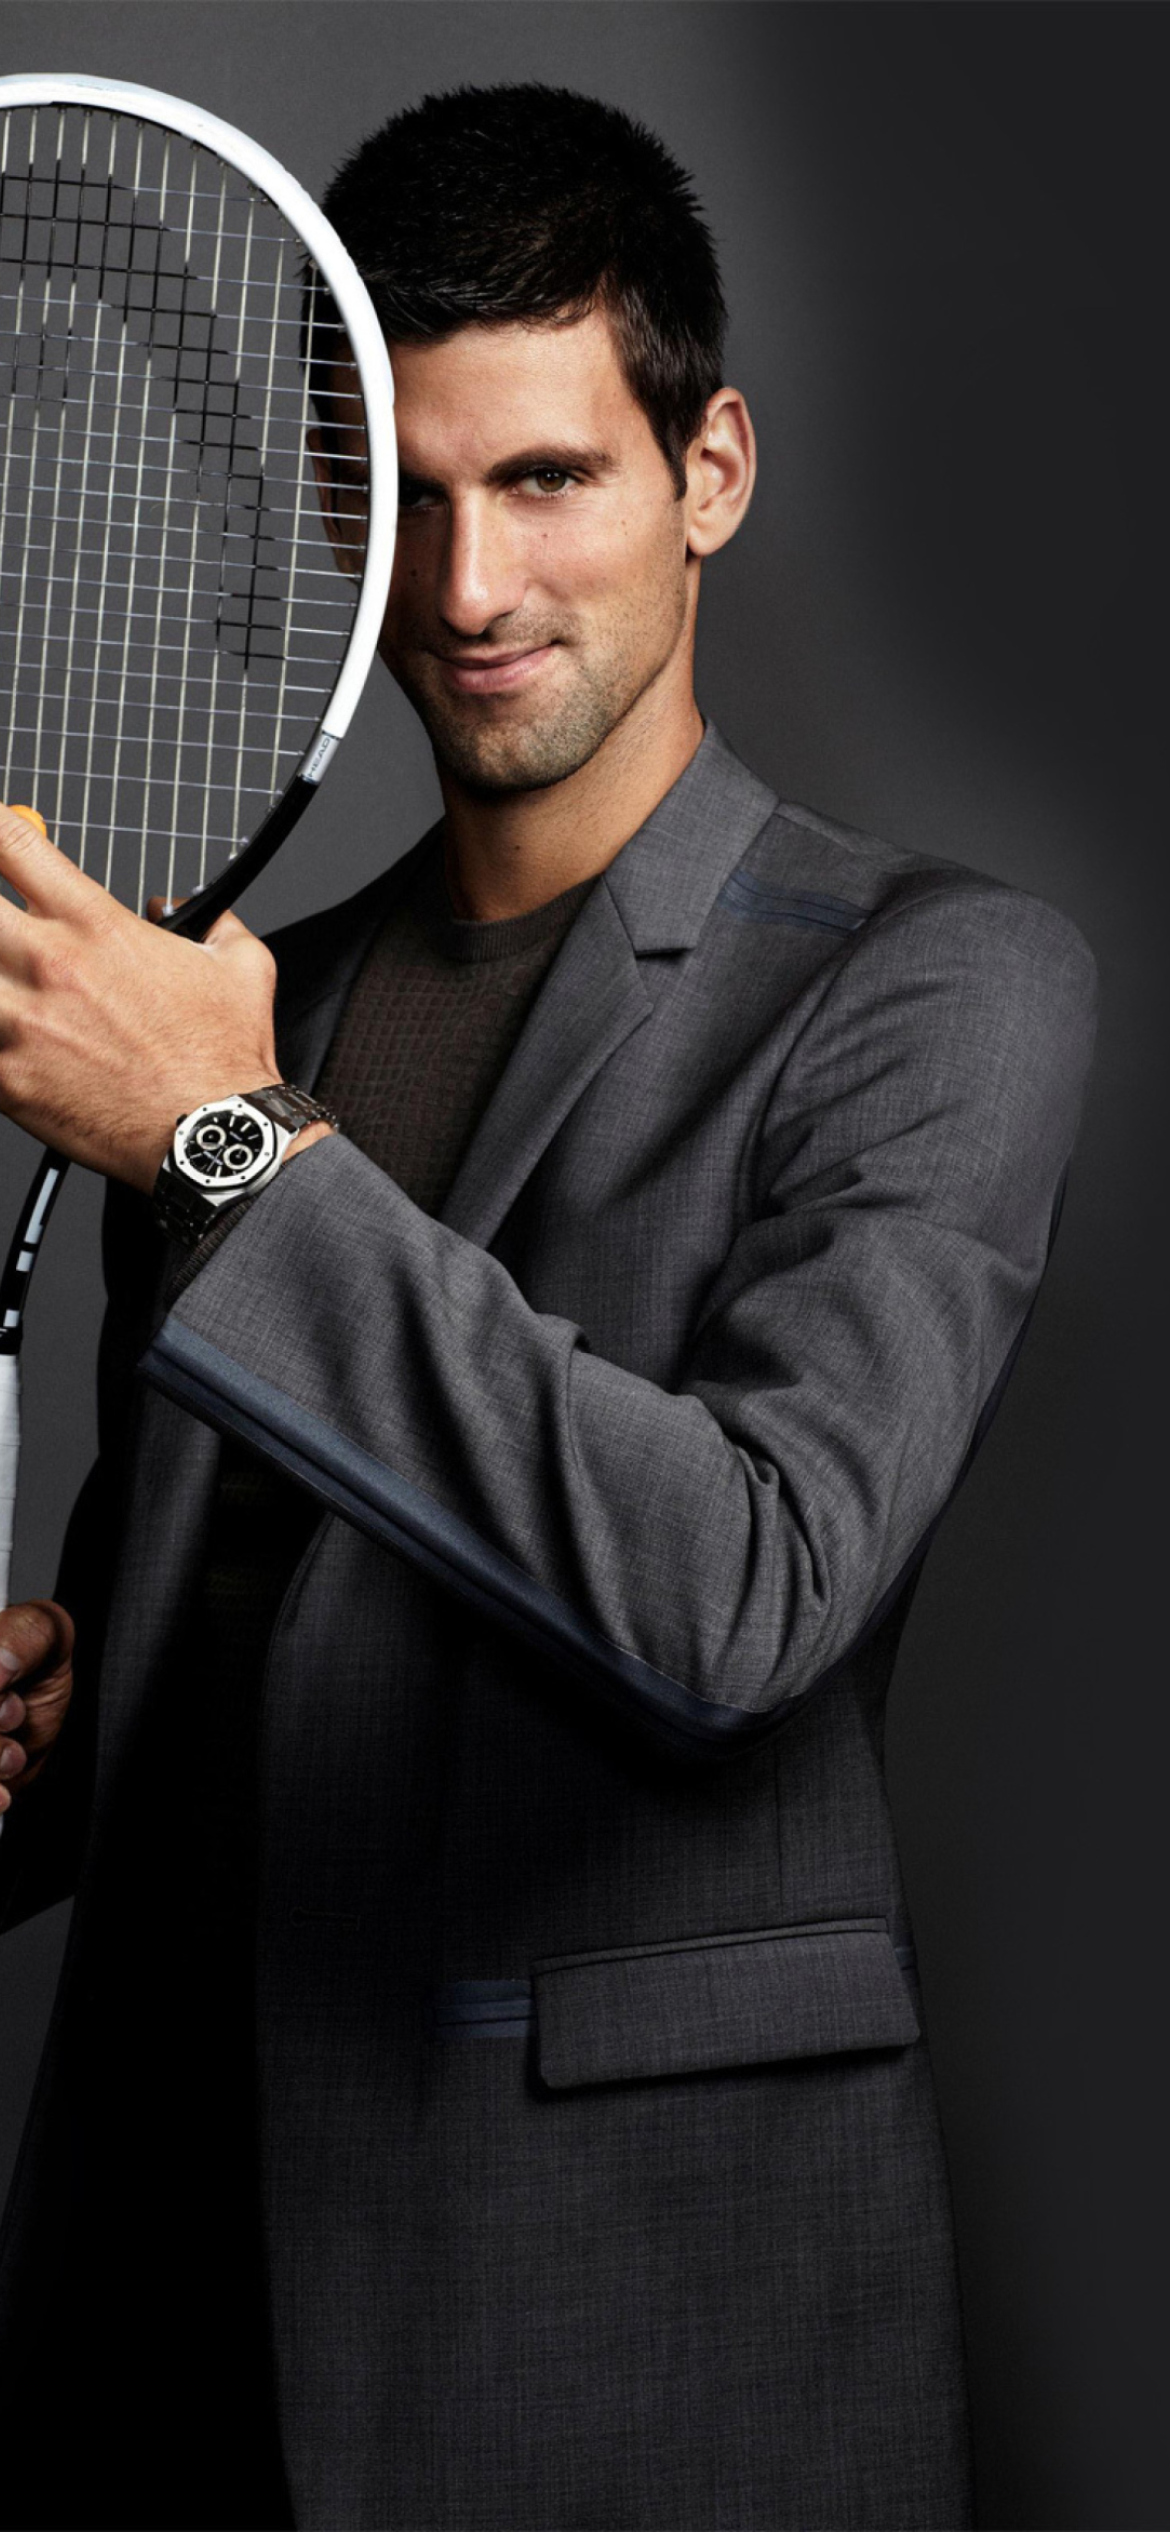 Fondo de pantalla Novak Djokovic 1170x2532